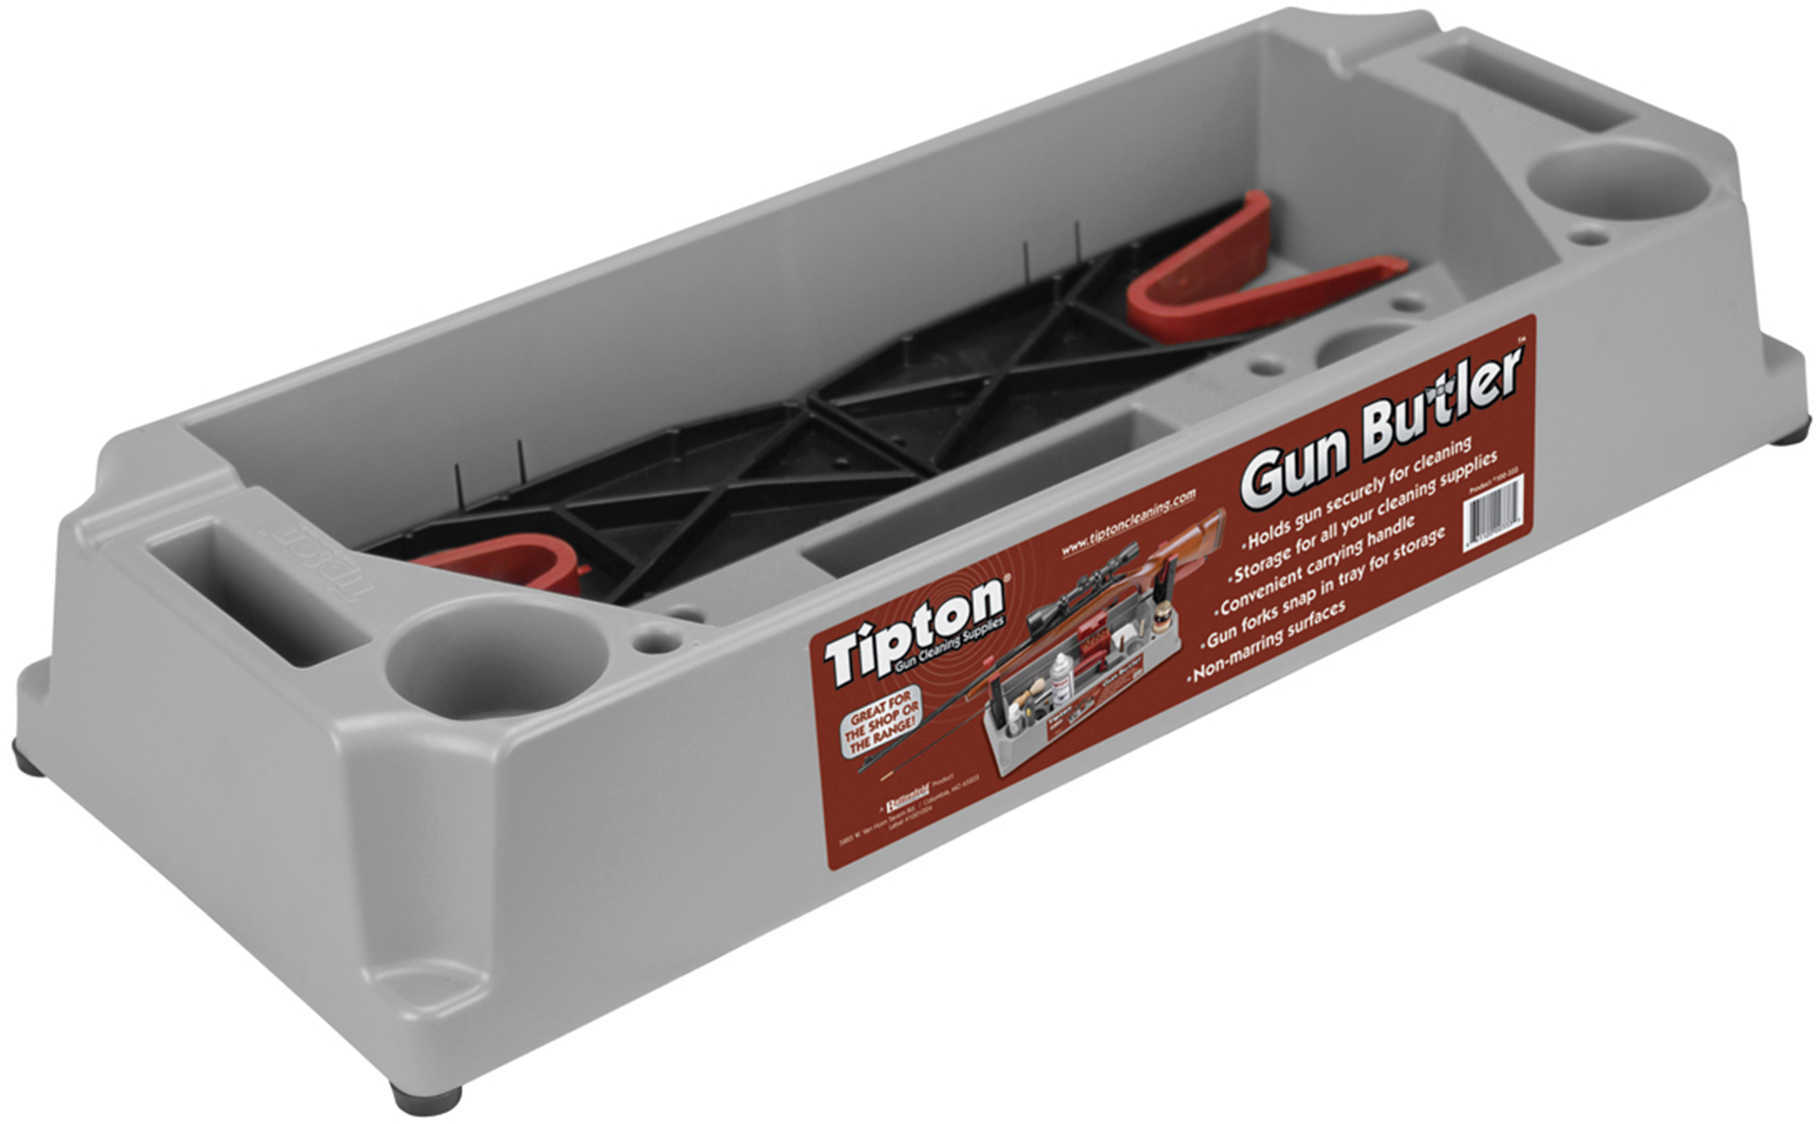 Tipton 100333 Gun Butler Gun Cleaning Tray Rifle